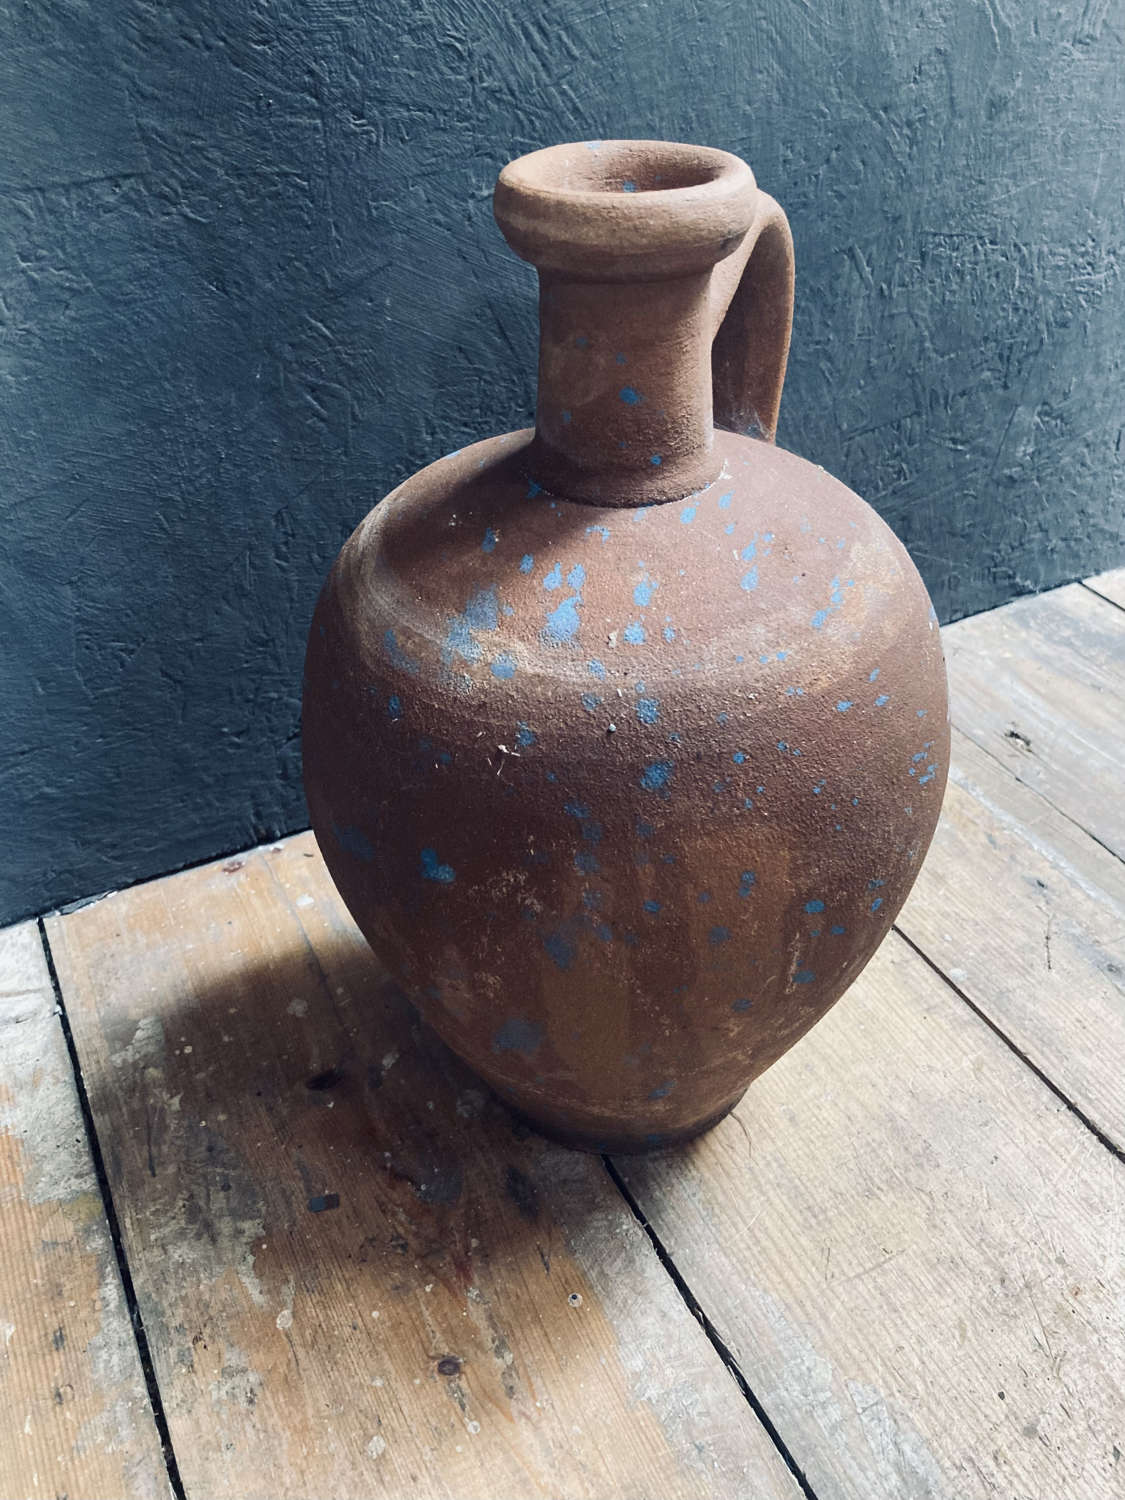 Small water jug.